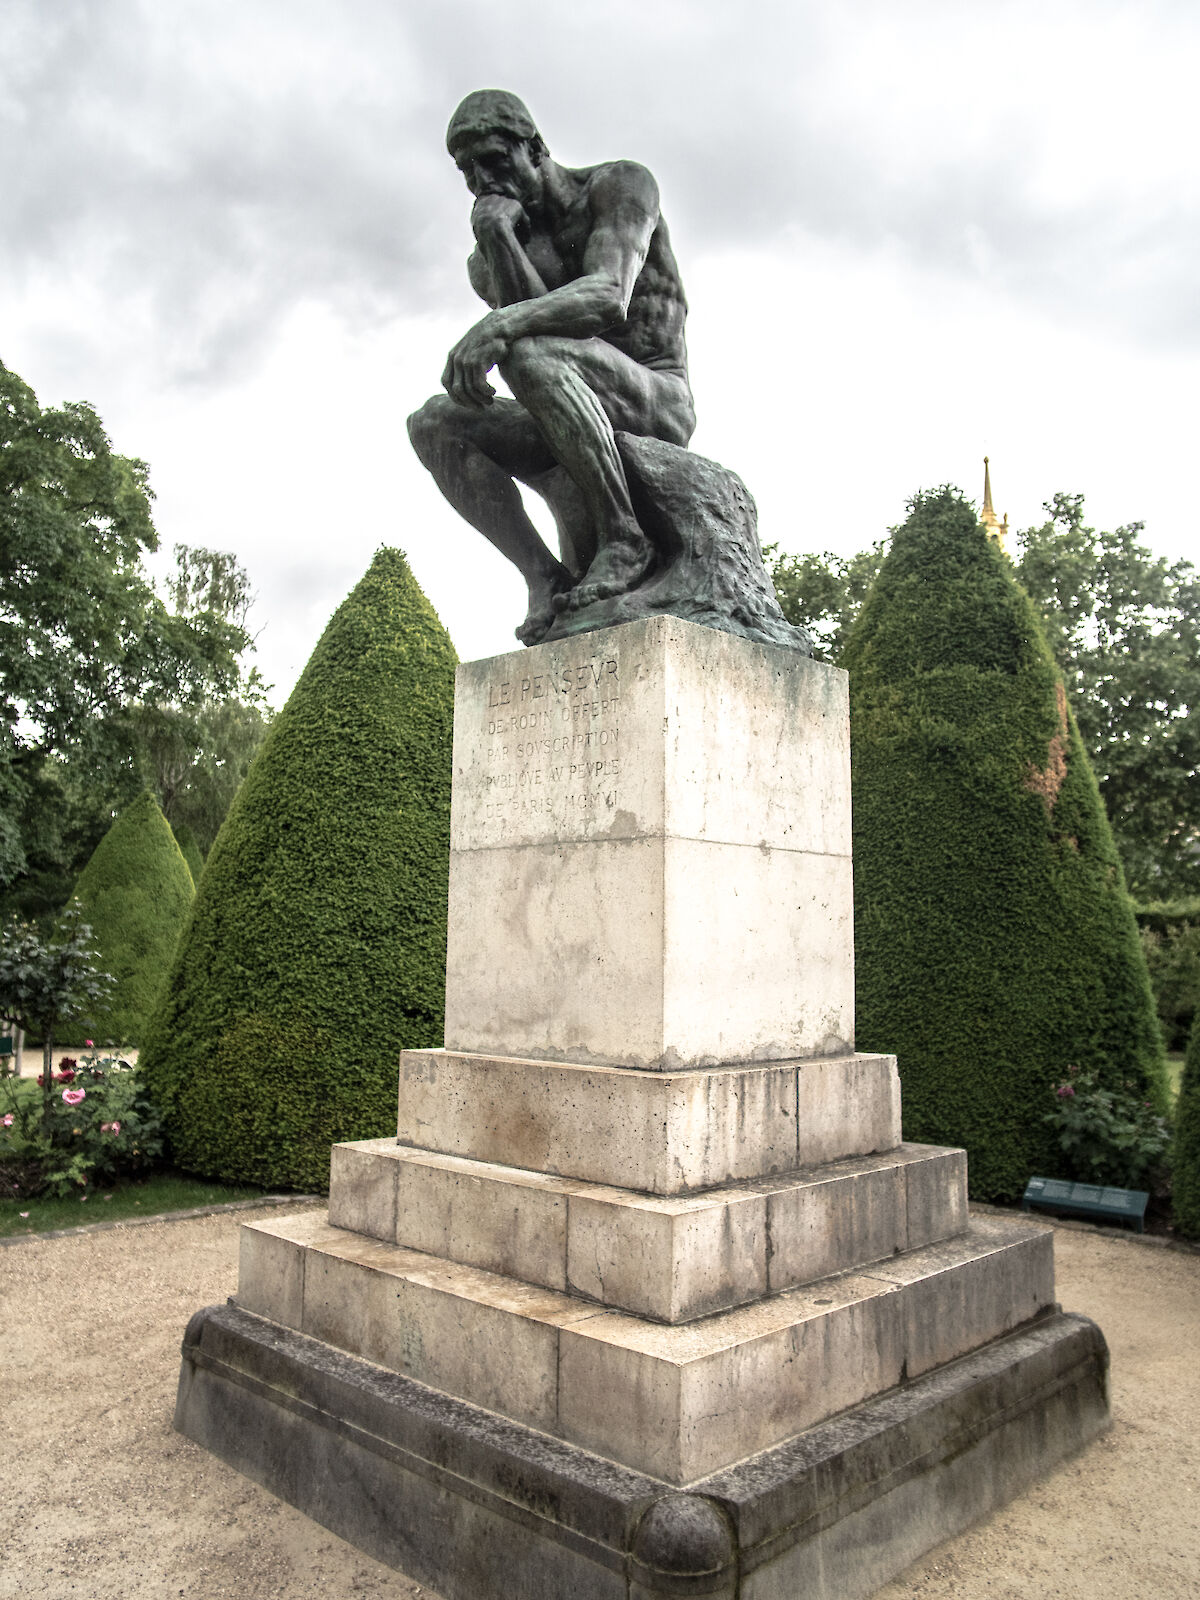 The Thinker by François Auguste René Rodin | Obelisk Art History